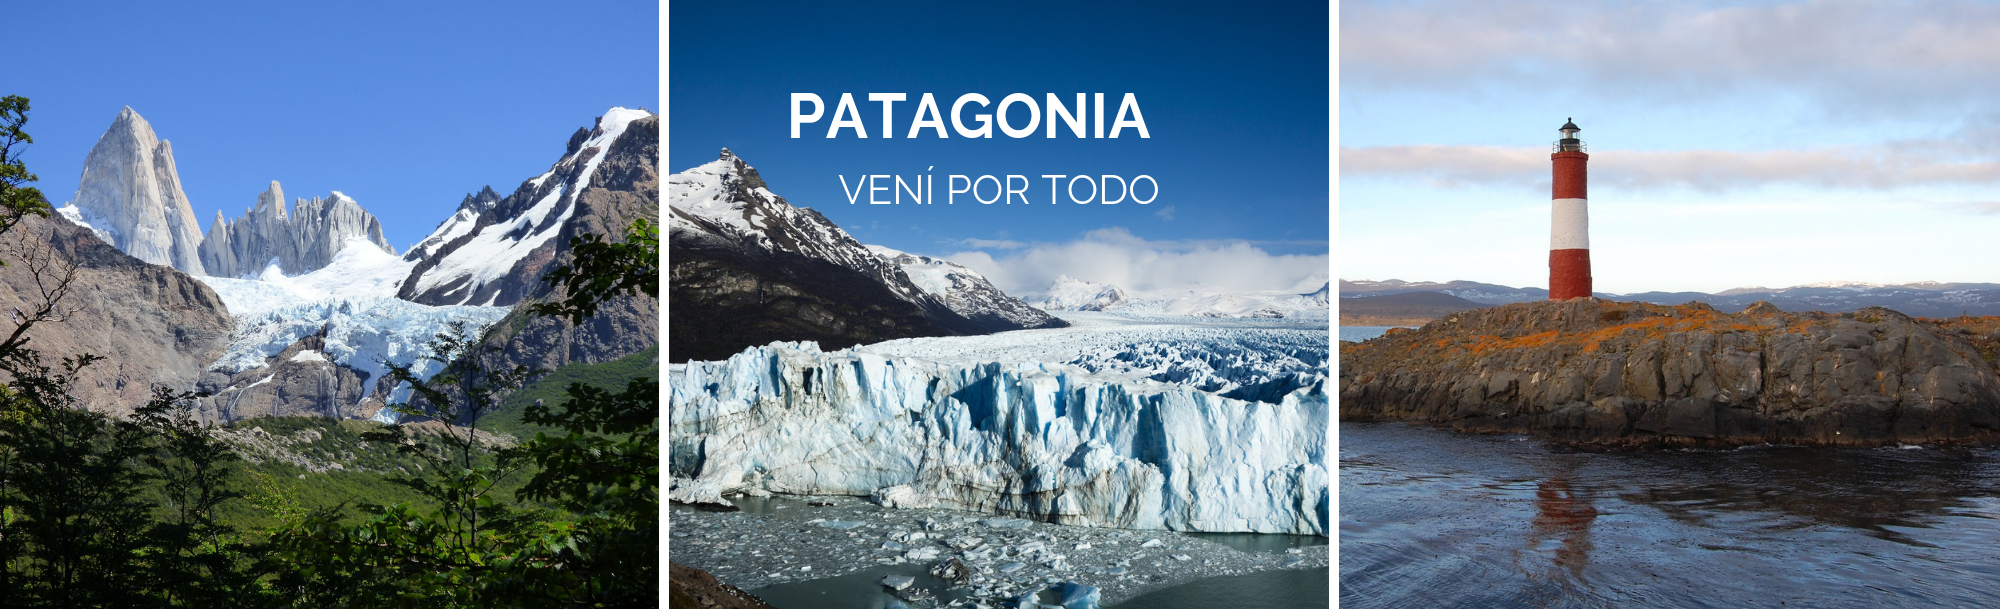 Patagonia Vení por todo